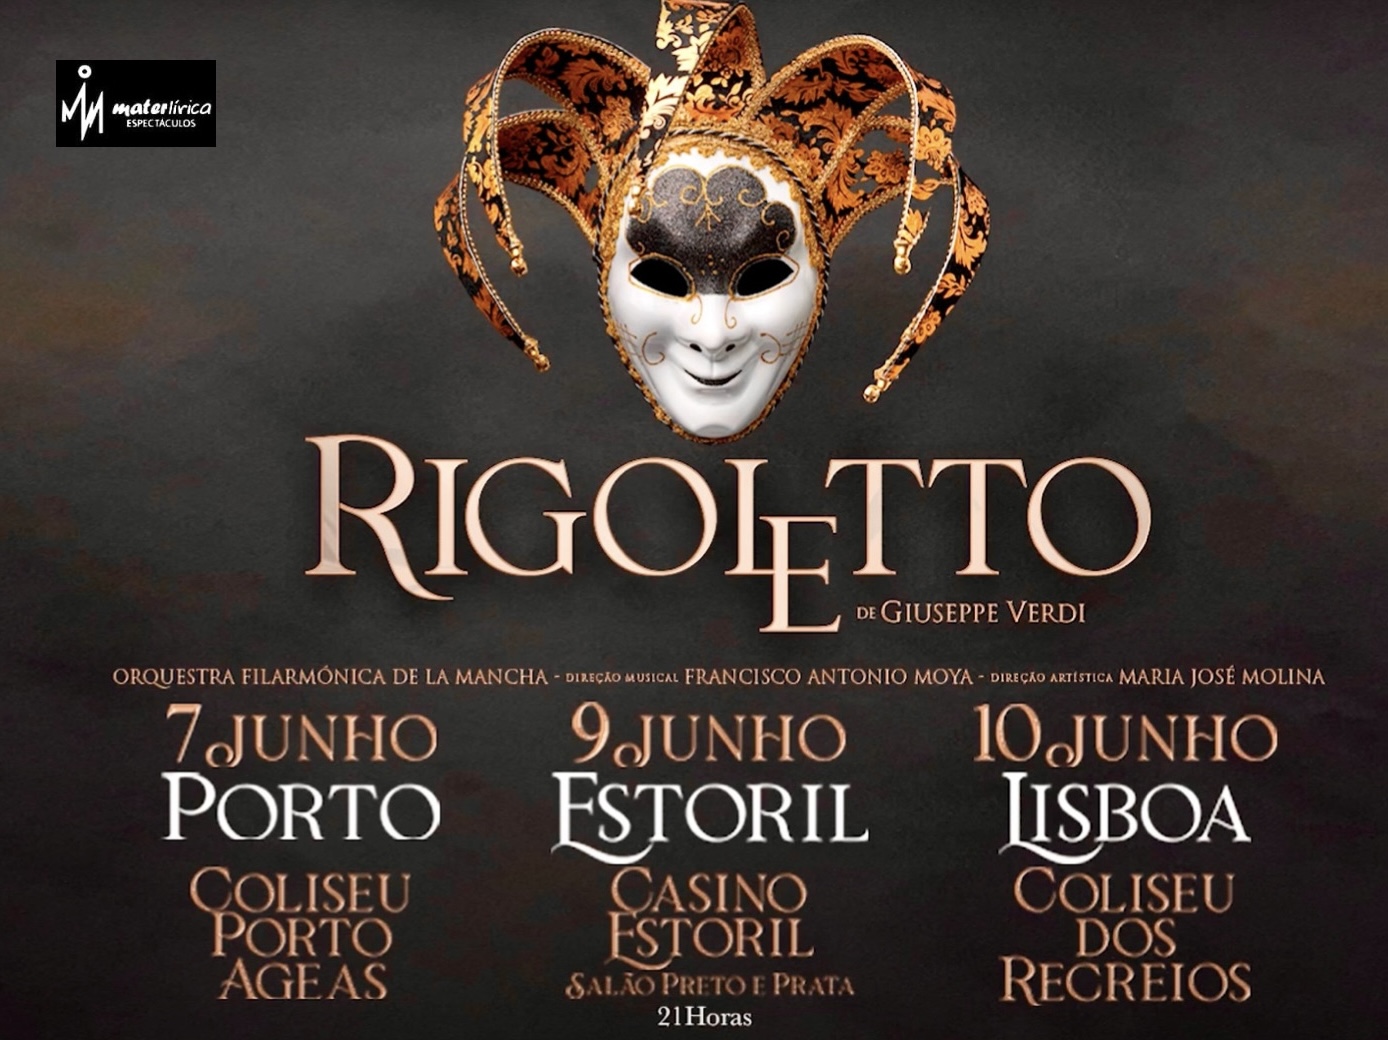 Cartel publicitario de las funciones de "Rigoletto" en tres ciudades de Portugal